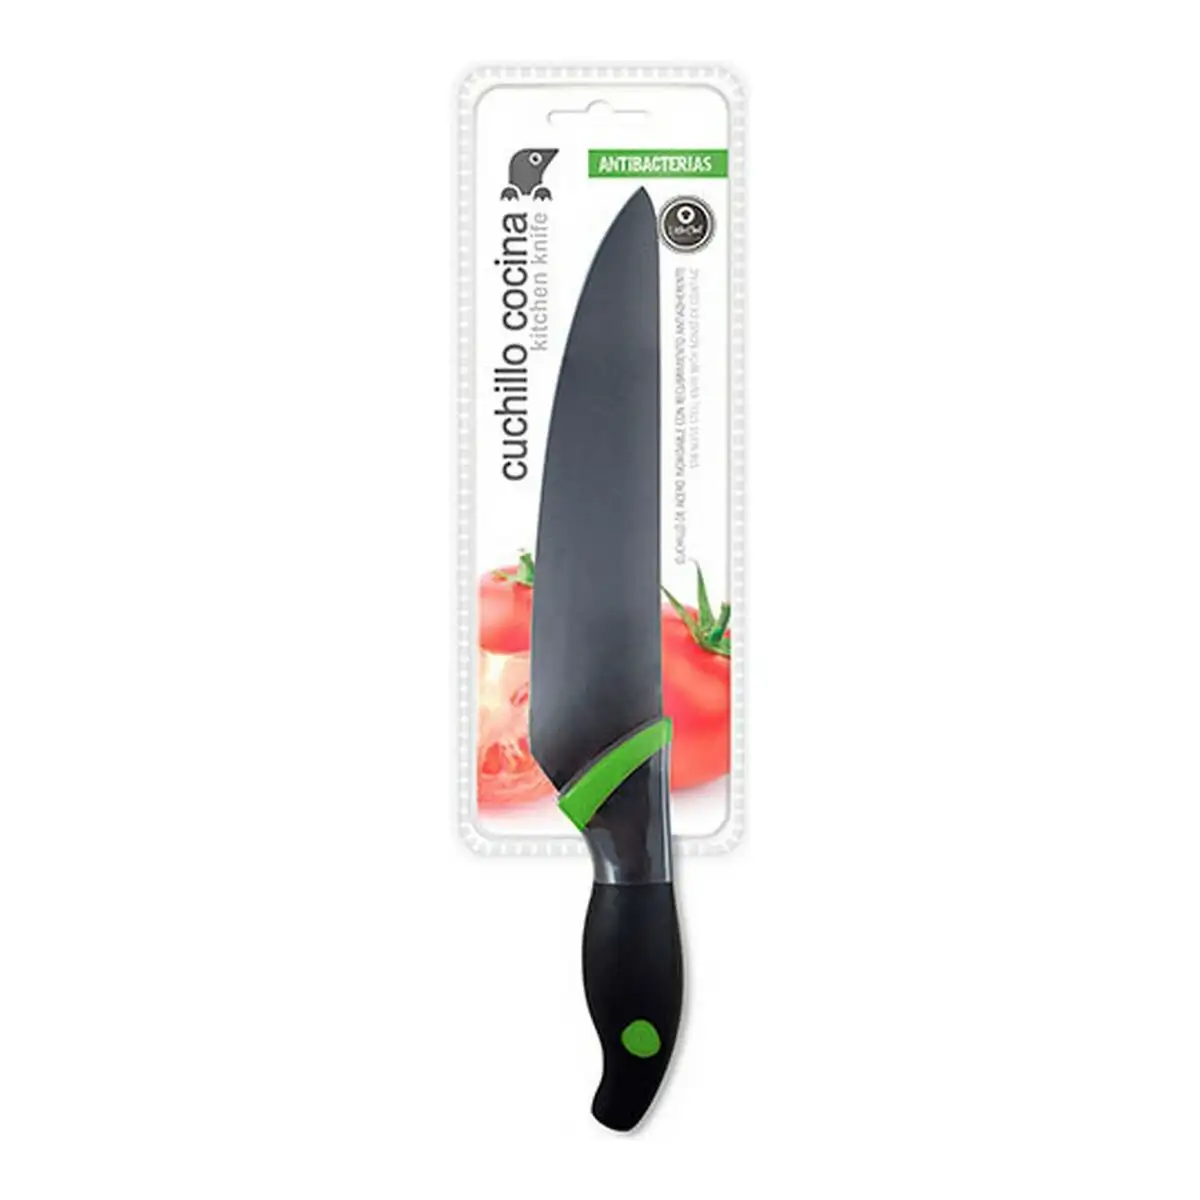 Couteau de cuisine 20 cm vert_6619. DIAYTAR SENEGAL - Là où l'Élégance Devient un Mode de Vie. Naviguez à travers notre gamme et choisissez des produits qui apportent une touche raffinée à votre quotidien.